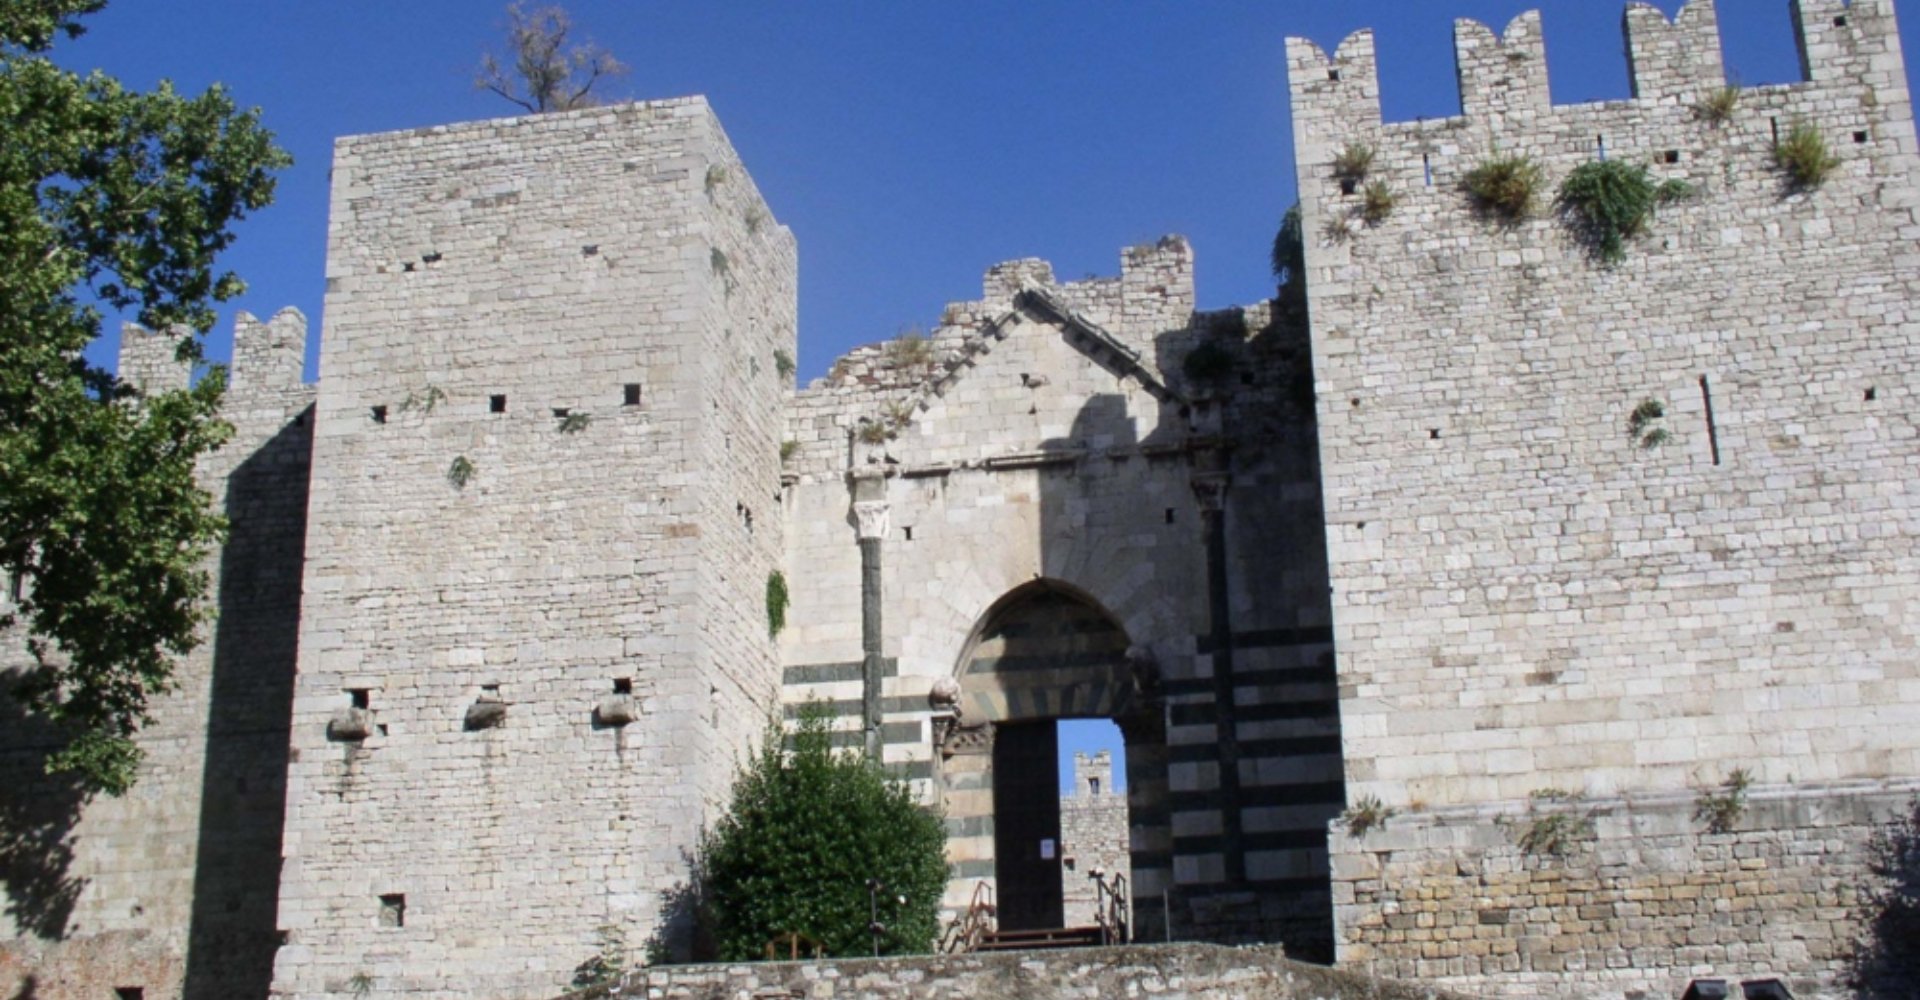 Château de l'Empereur de Prato